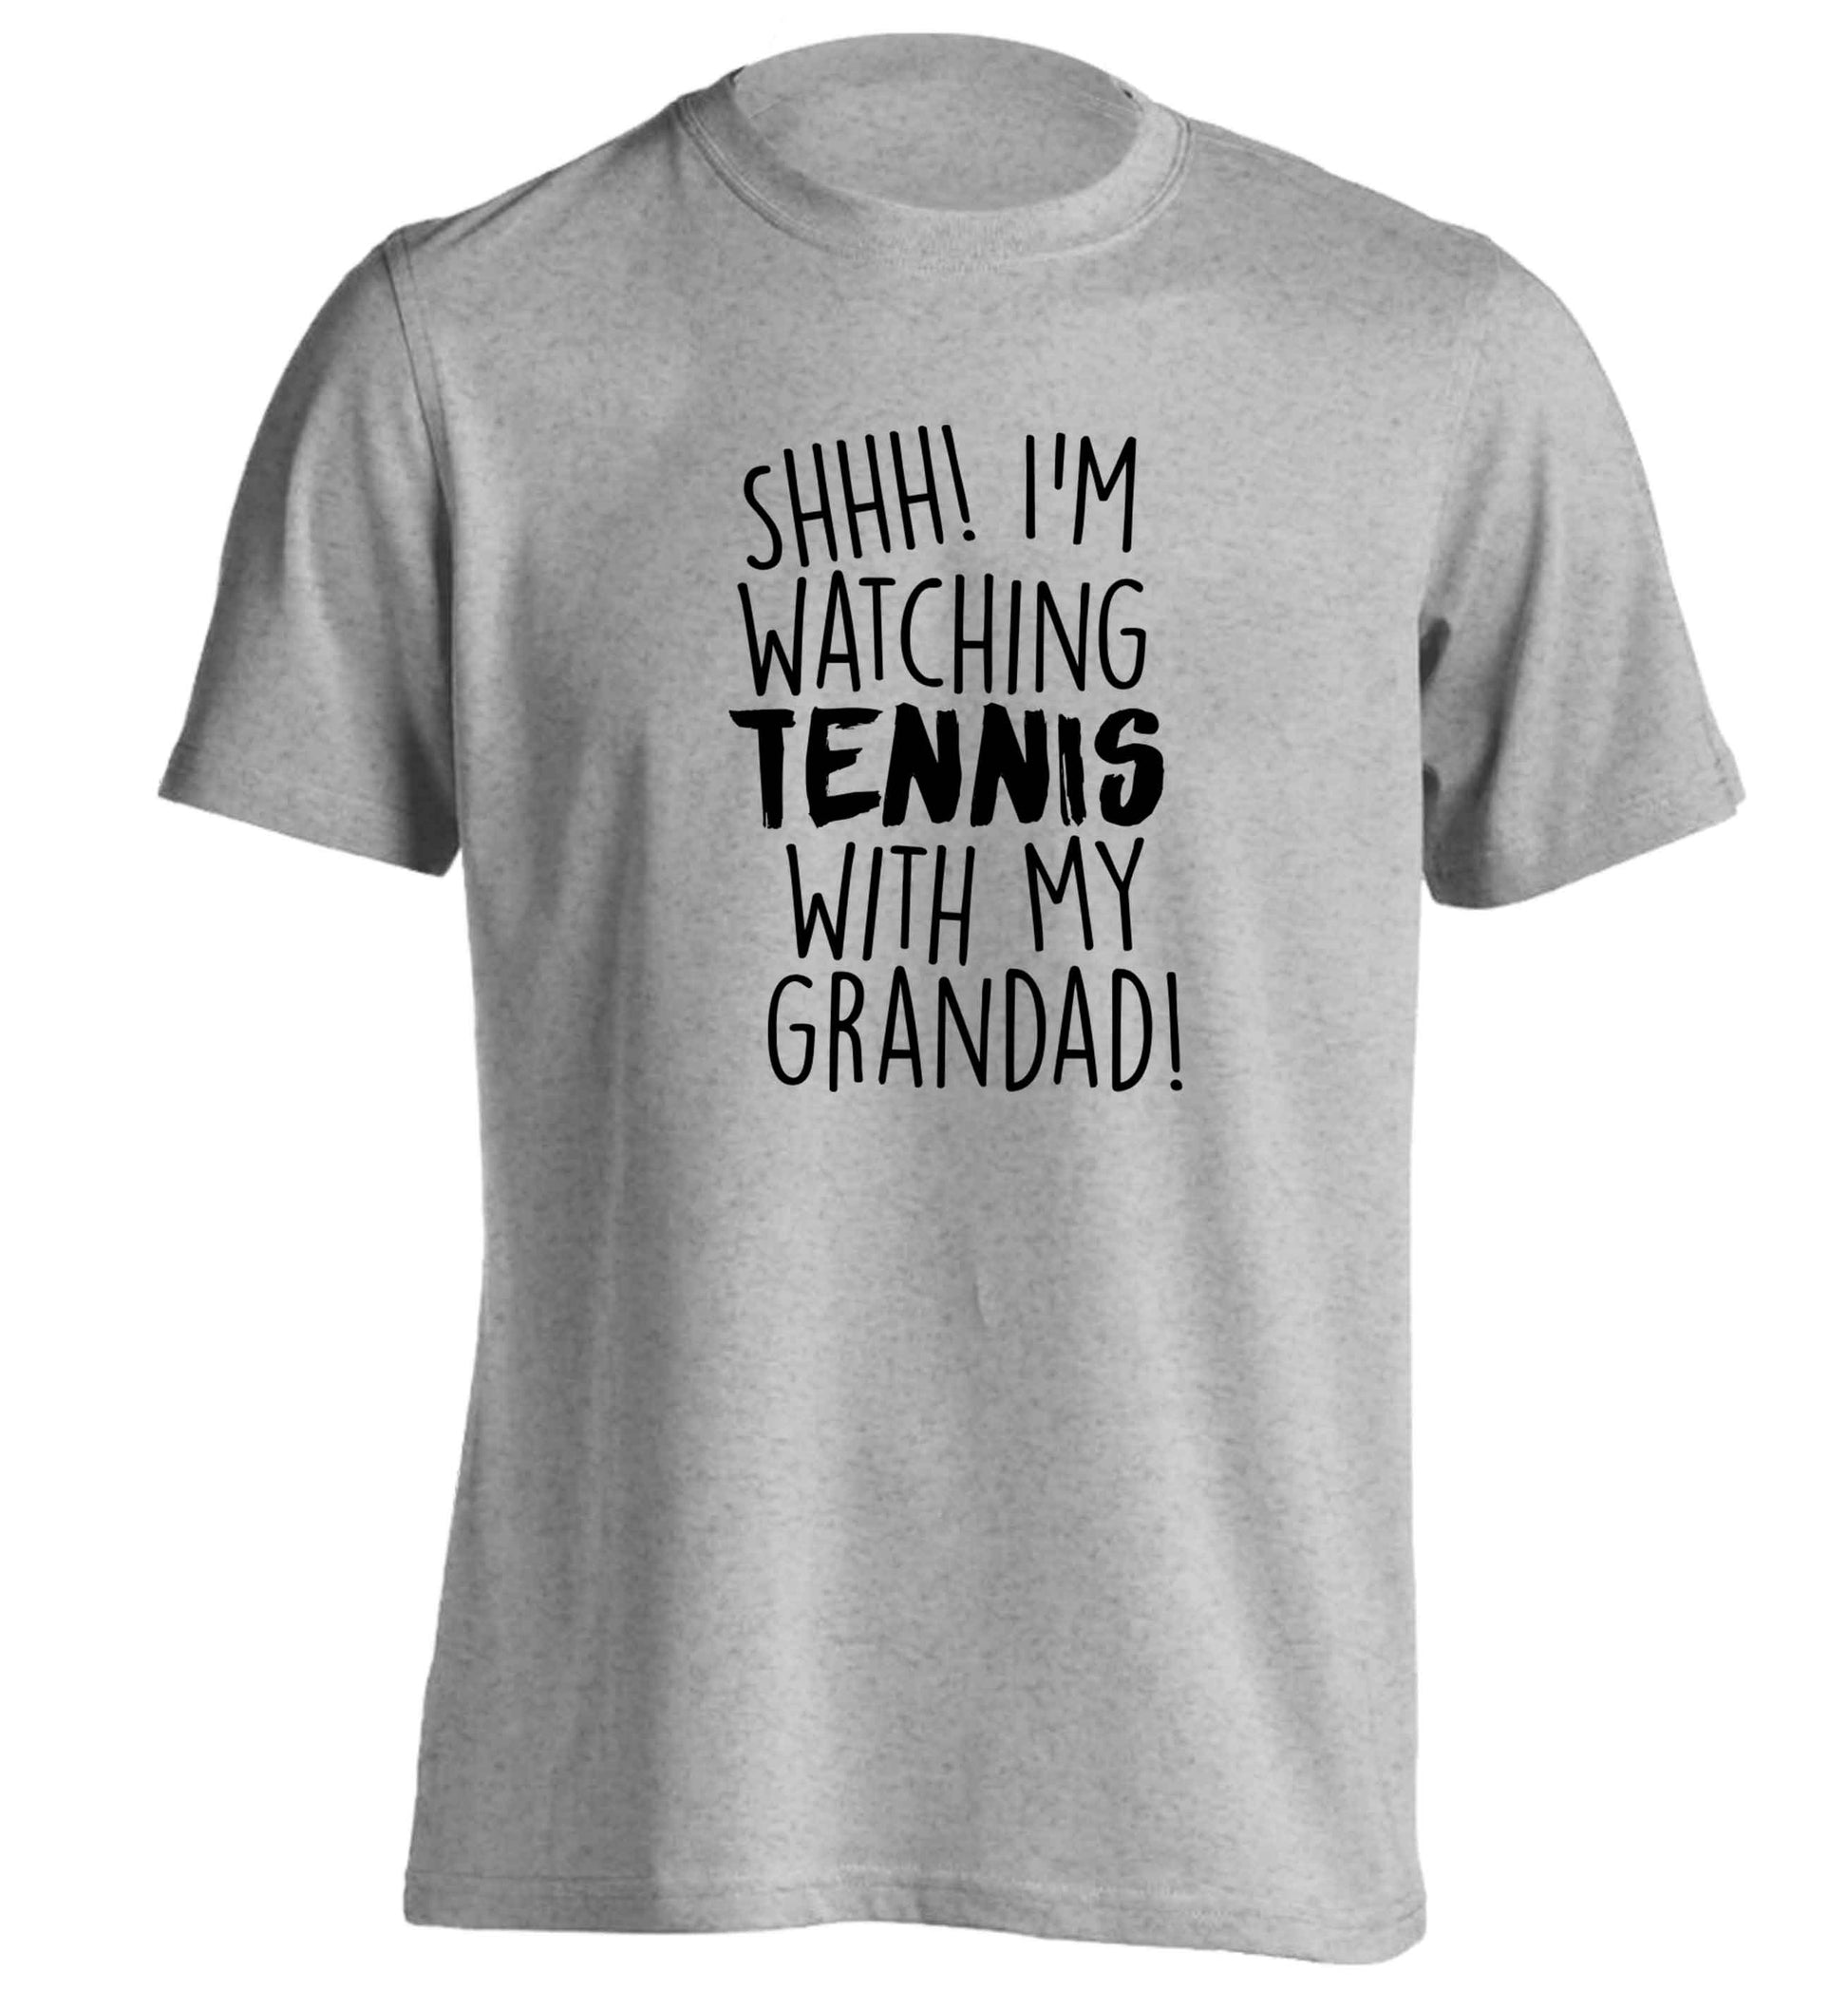 Shh! I'm watching tennis with my grandad! adults unisex grey Tshirt 2XL